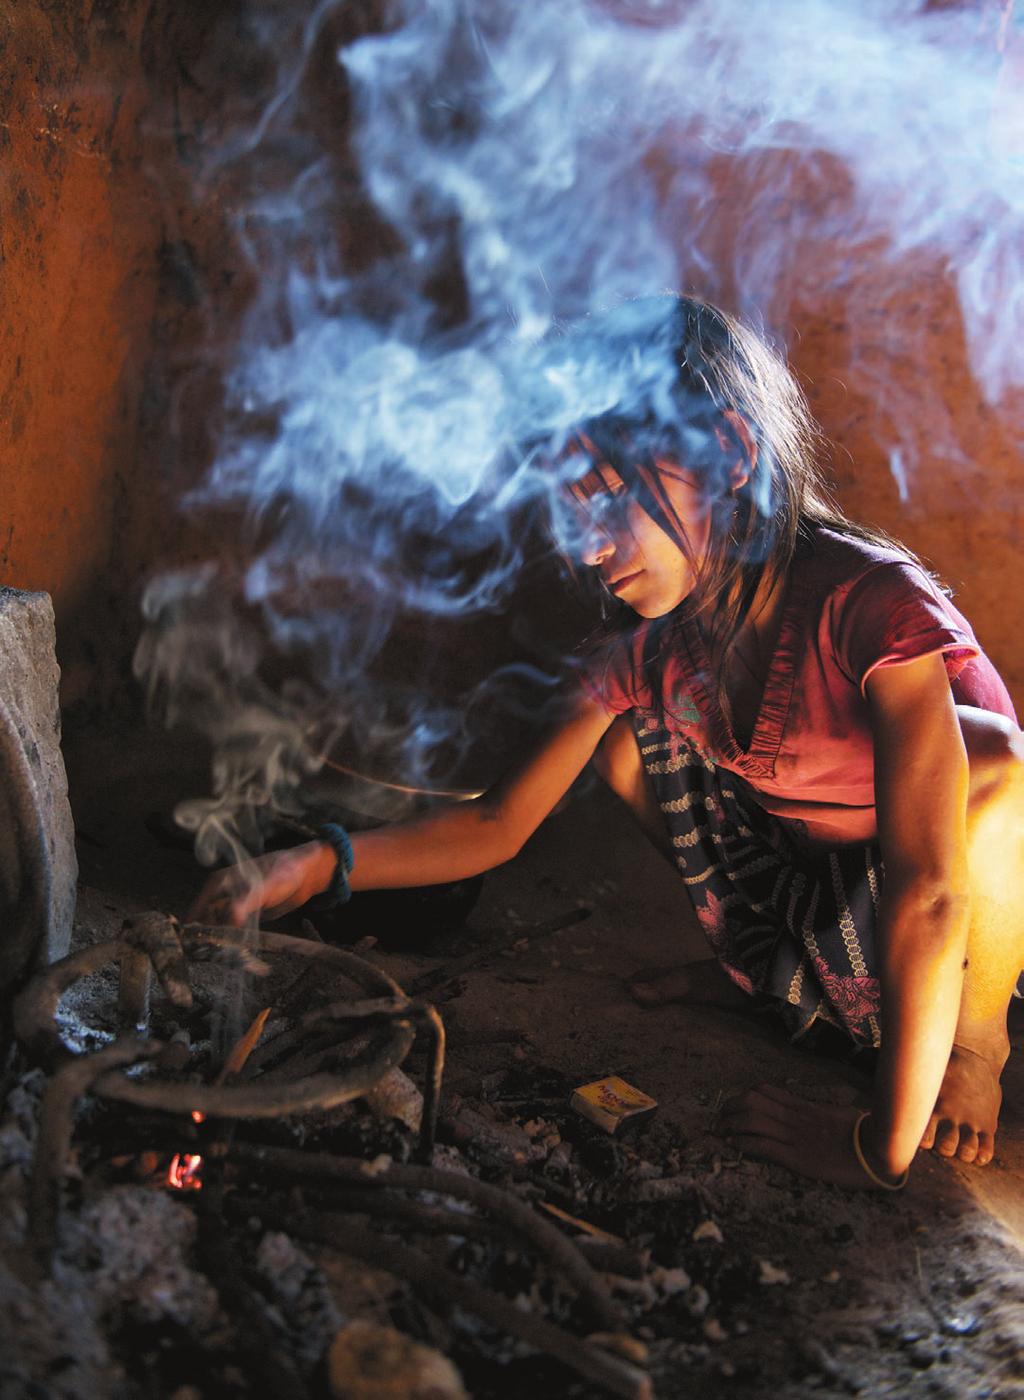 사진 왼쪽 저녁 준비를 하는 일곱 살 사루. 네팔에 살고 있는 사루는 남의 집 빨래와 청소 등을 하며 생계를 해결한다. UNICEF/NYHQ2012-1998/Shehzad Noorani 사진 오른쪽 필리핀 세부의 열네 살 유키는 8년 전 가사도우미로 있던 집에서 성폭력 을 당했다. 이혼한 부모님과 연락이 두절된 후 지금까지 가사도우미 생활을 하고 있다.